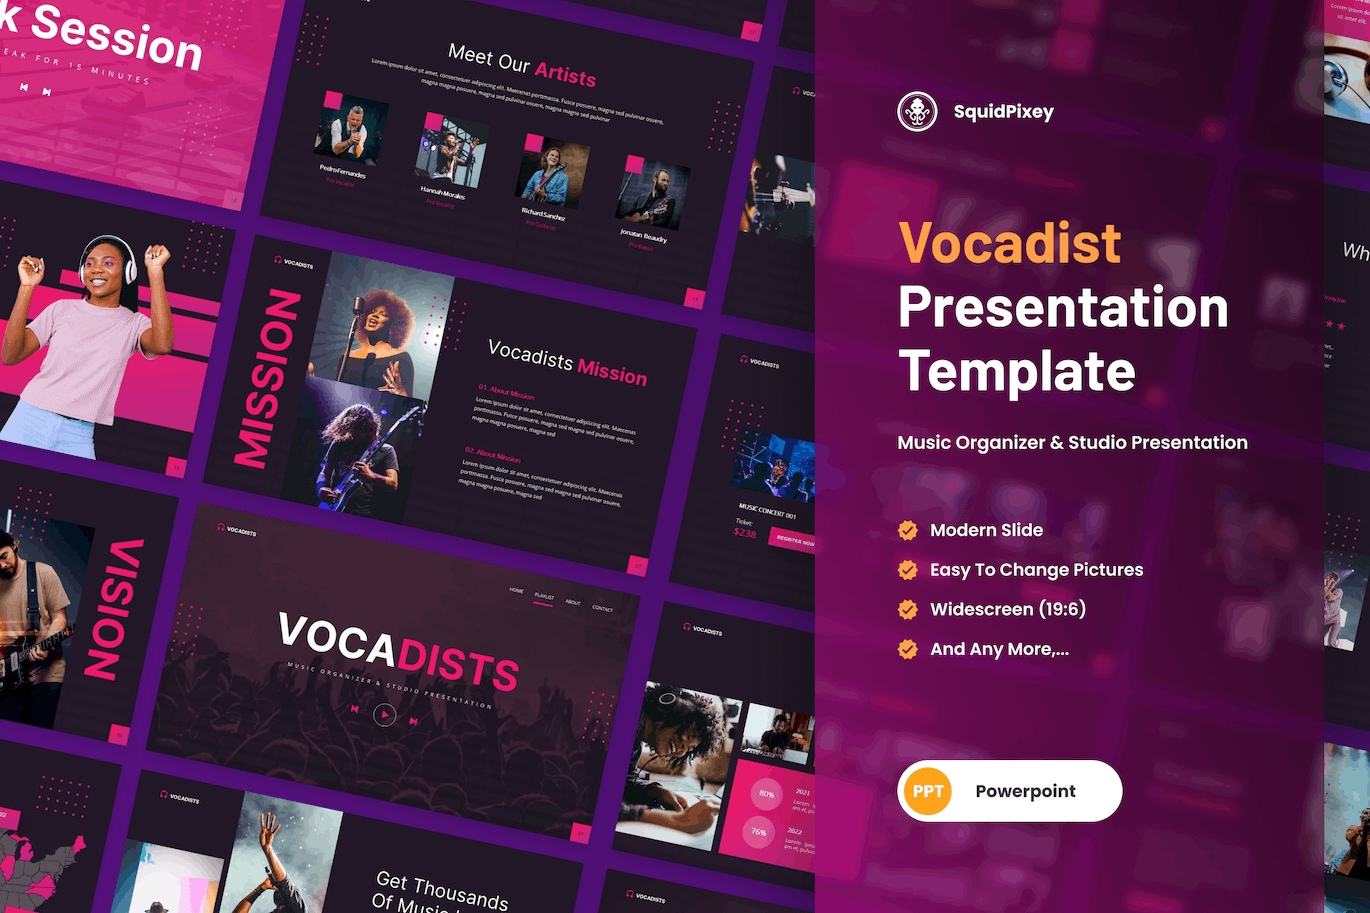 音乐团队和工作室PPT幻灯片模板 Vocadists – Music Organizer & Studio Powerpoint 幻灯图表 第1张